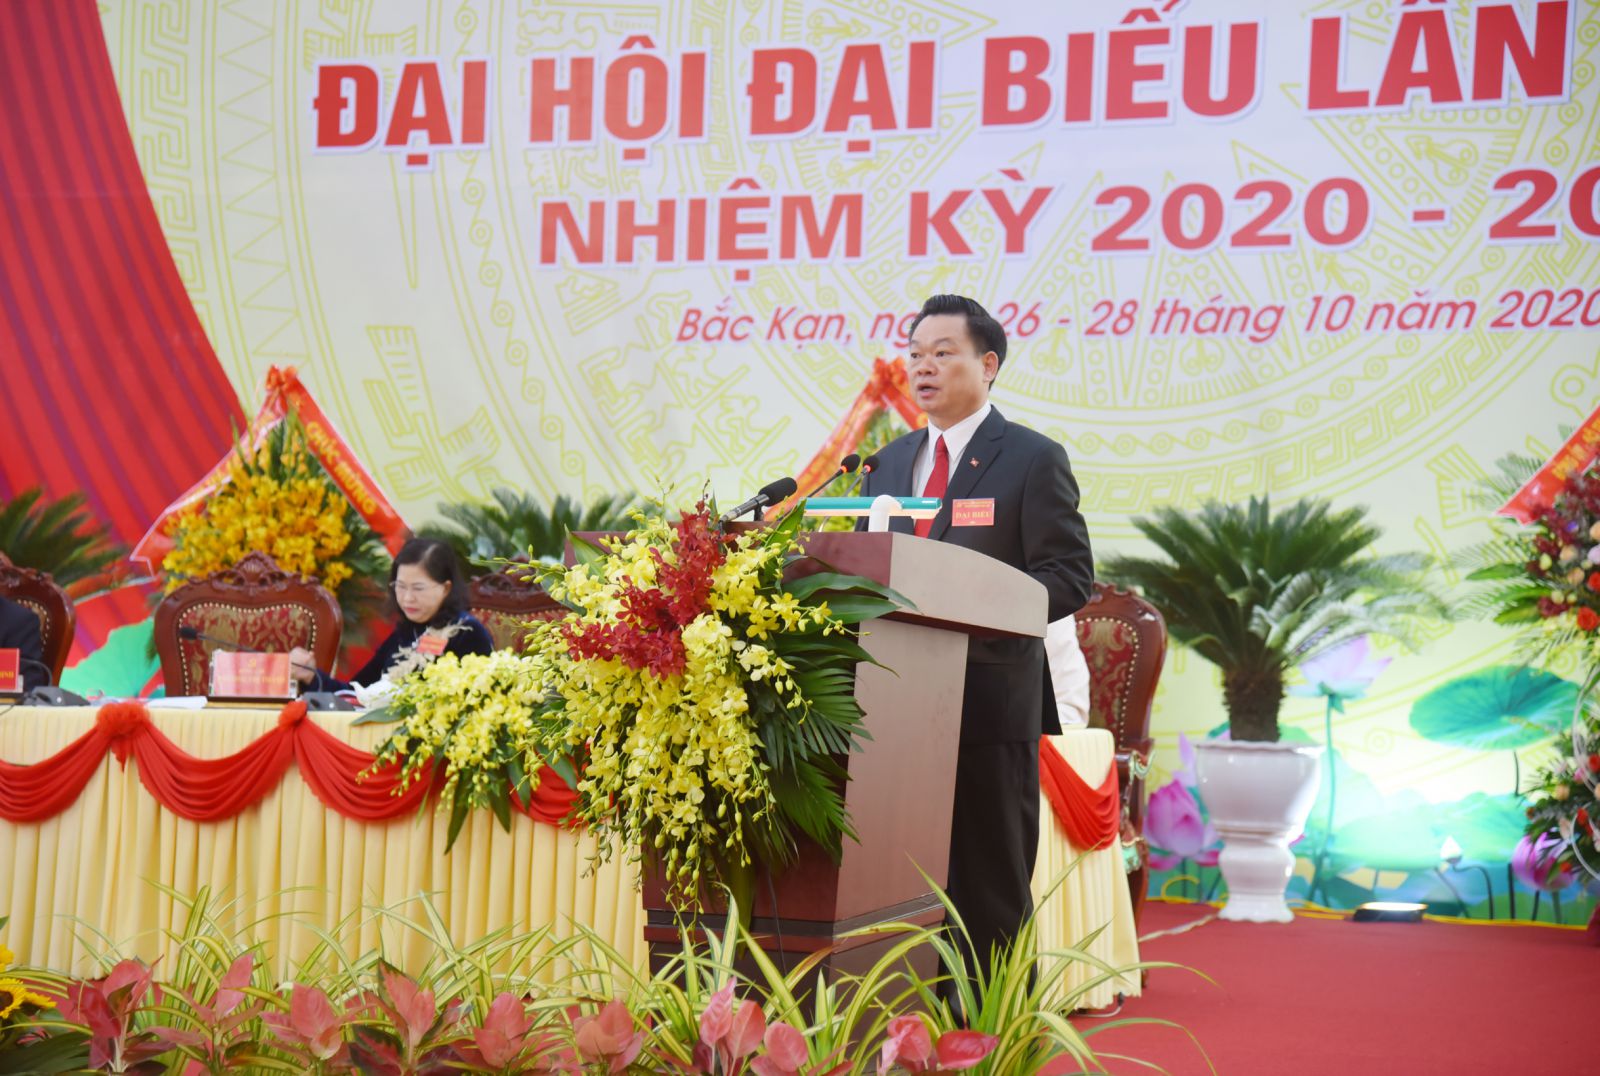 Ông chí Hoàng Duy Chinh, Phó Bí thư Thường trực Tỉnh ủy được tín nhiệm bầu giữ chức vụ Bí thư Tỉnh ủy khóa XII, nhiệm kỳ 2020 - 2025.